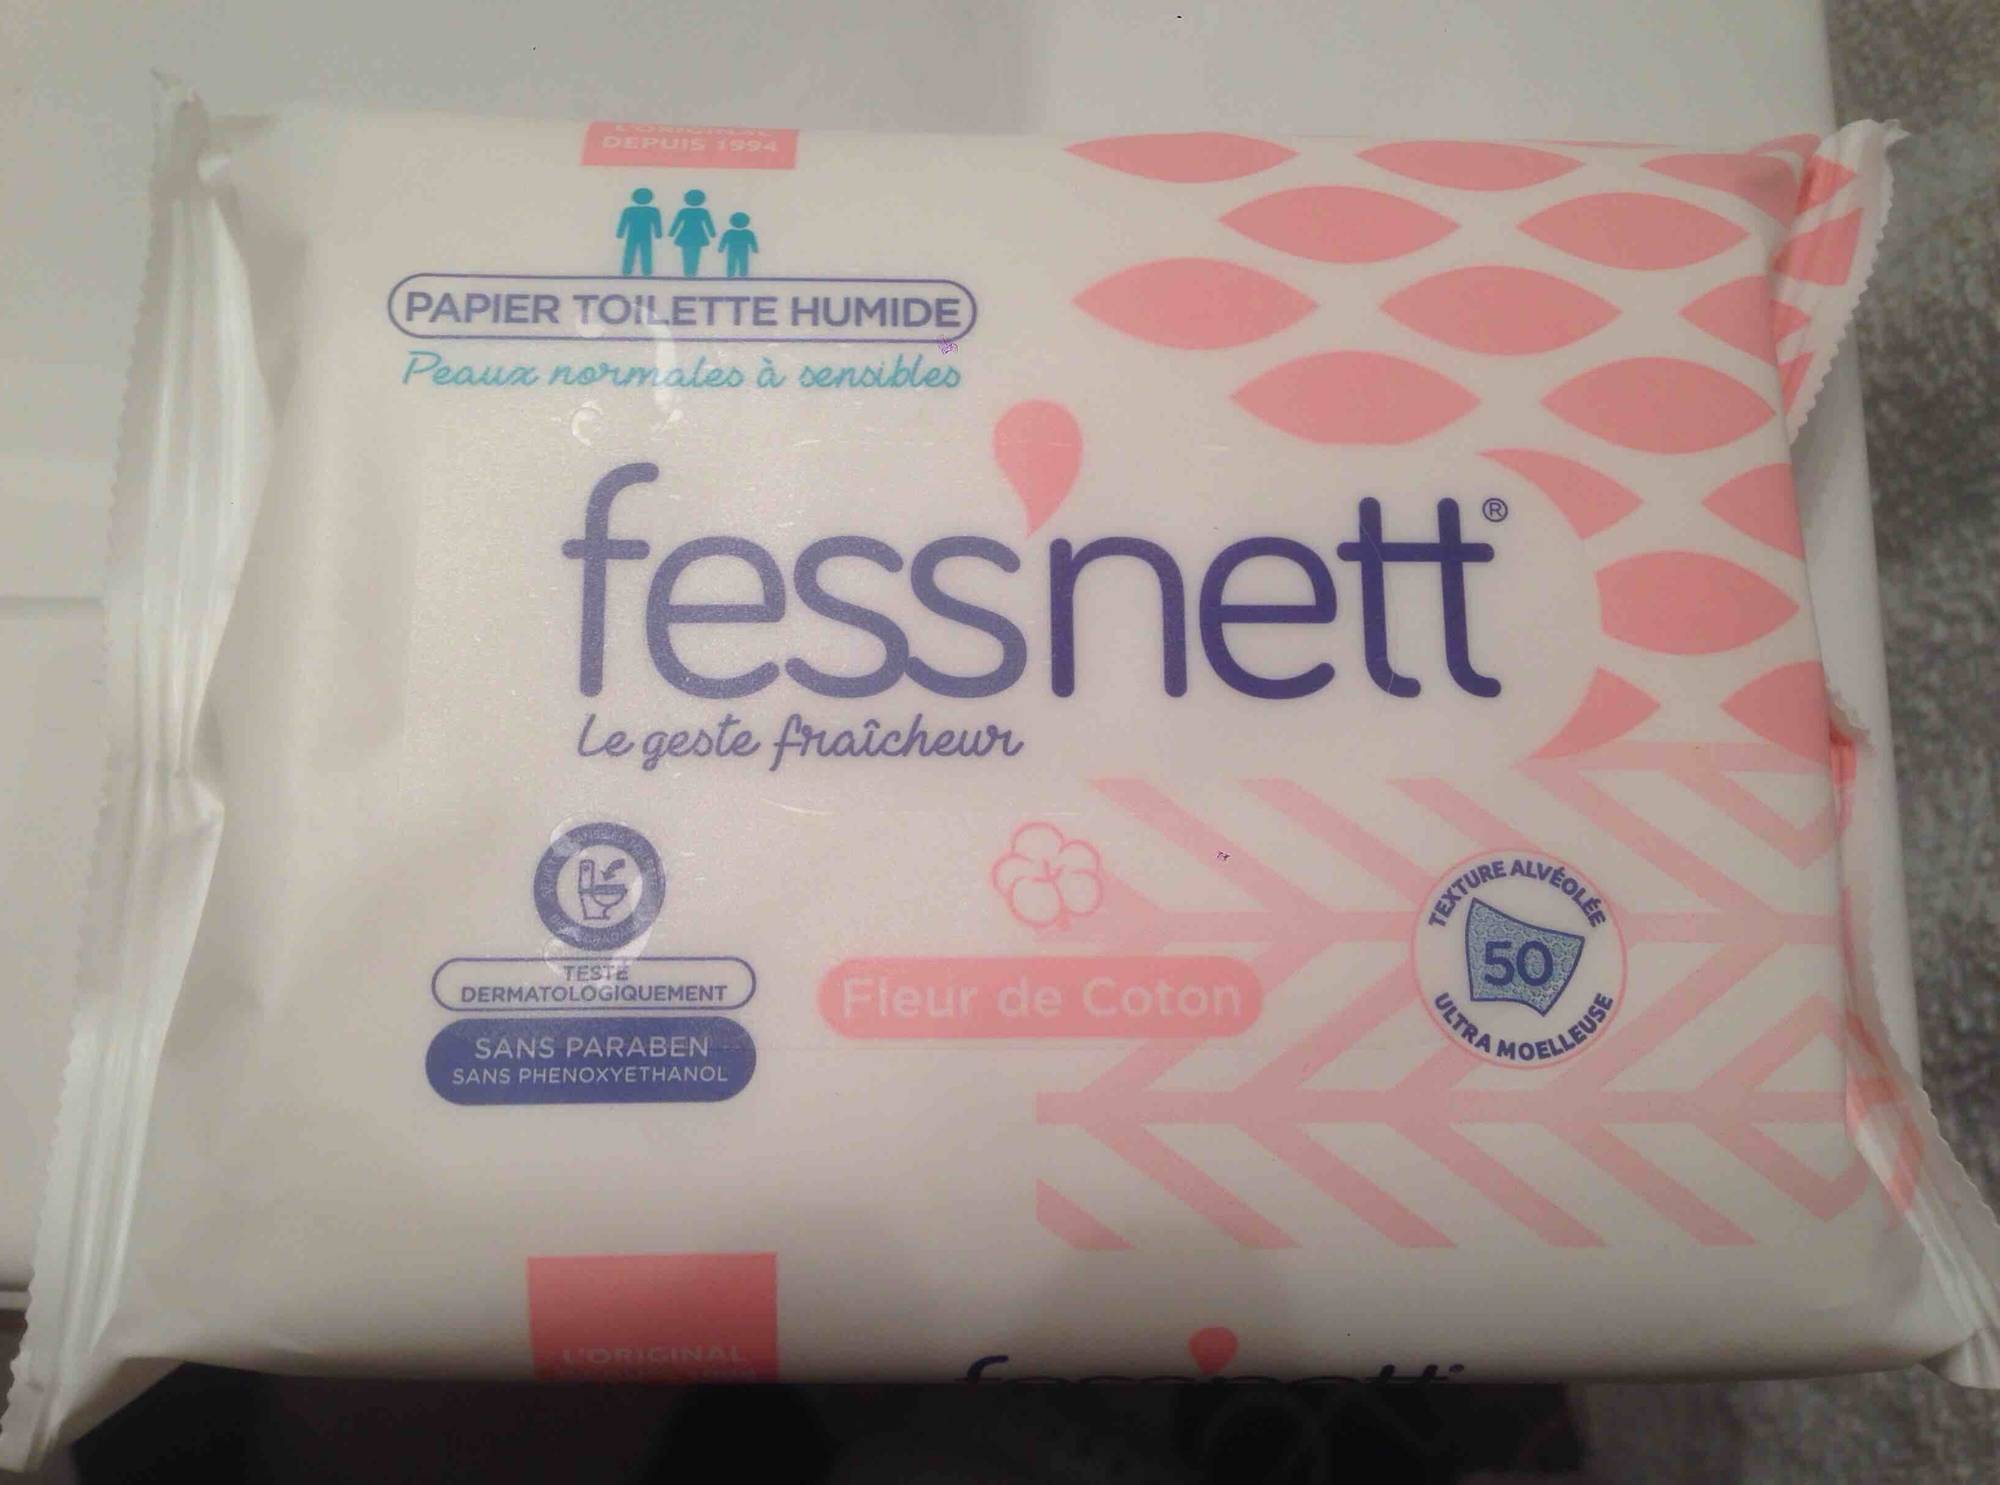 Fess'nett Papier Toilette Humide Sensitive, Le lot de 3 x 50